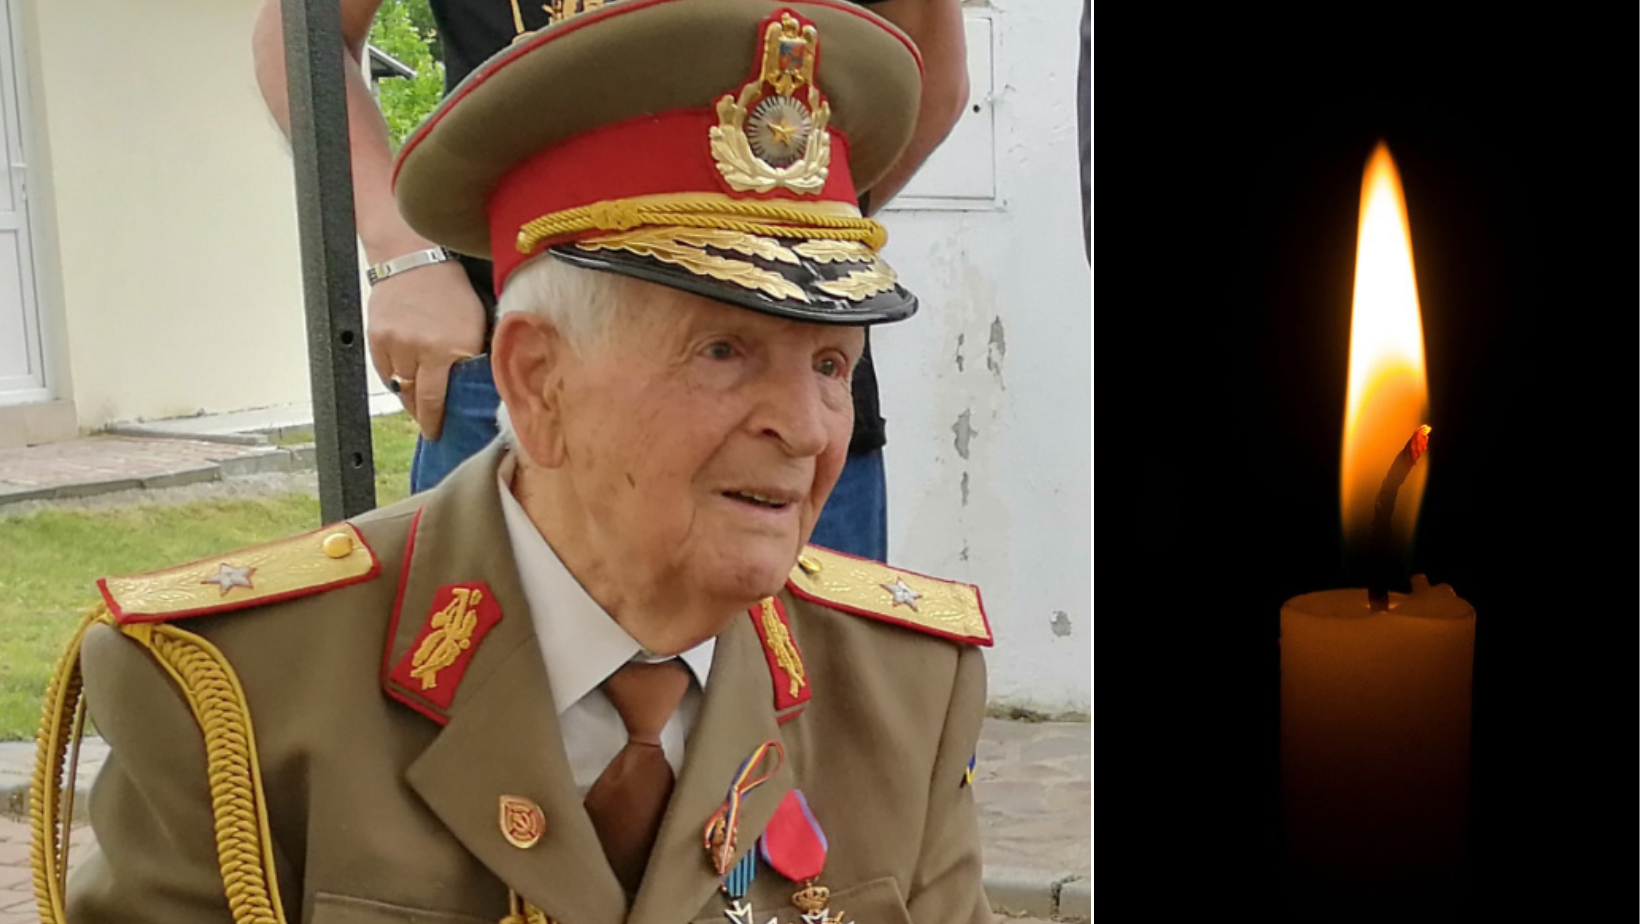 Cel mai vârstnic General al Armatei Române a trecut la cele veșnice la 108 ani